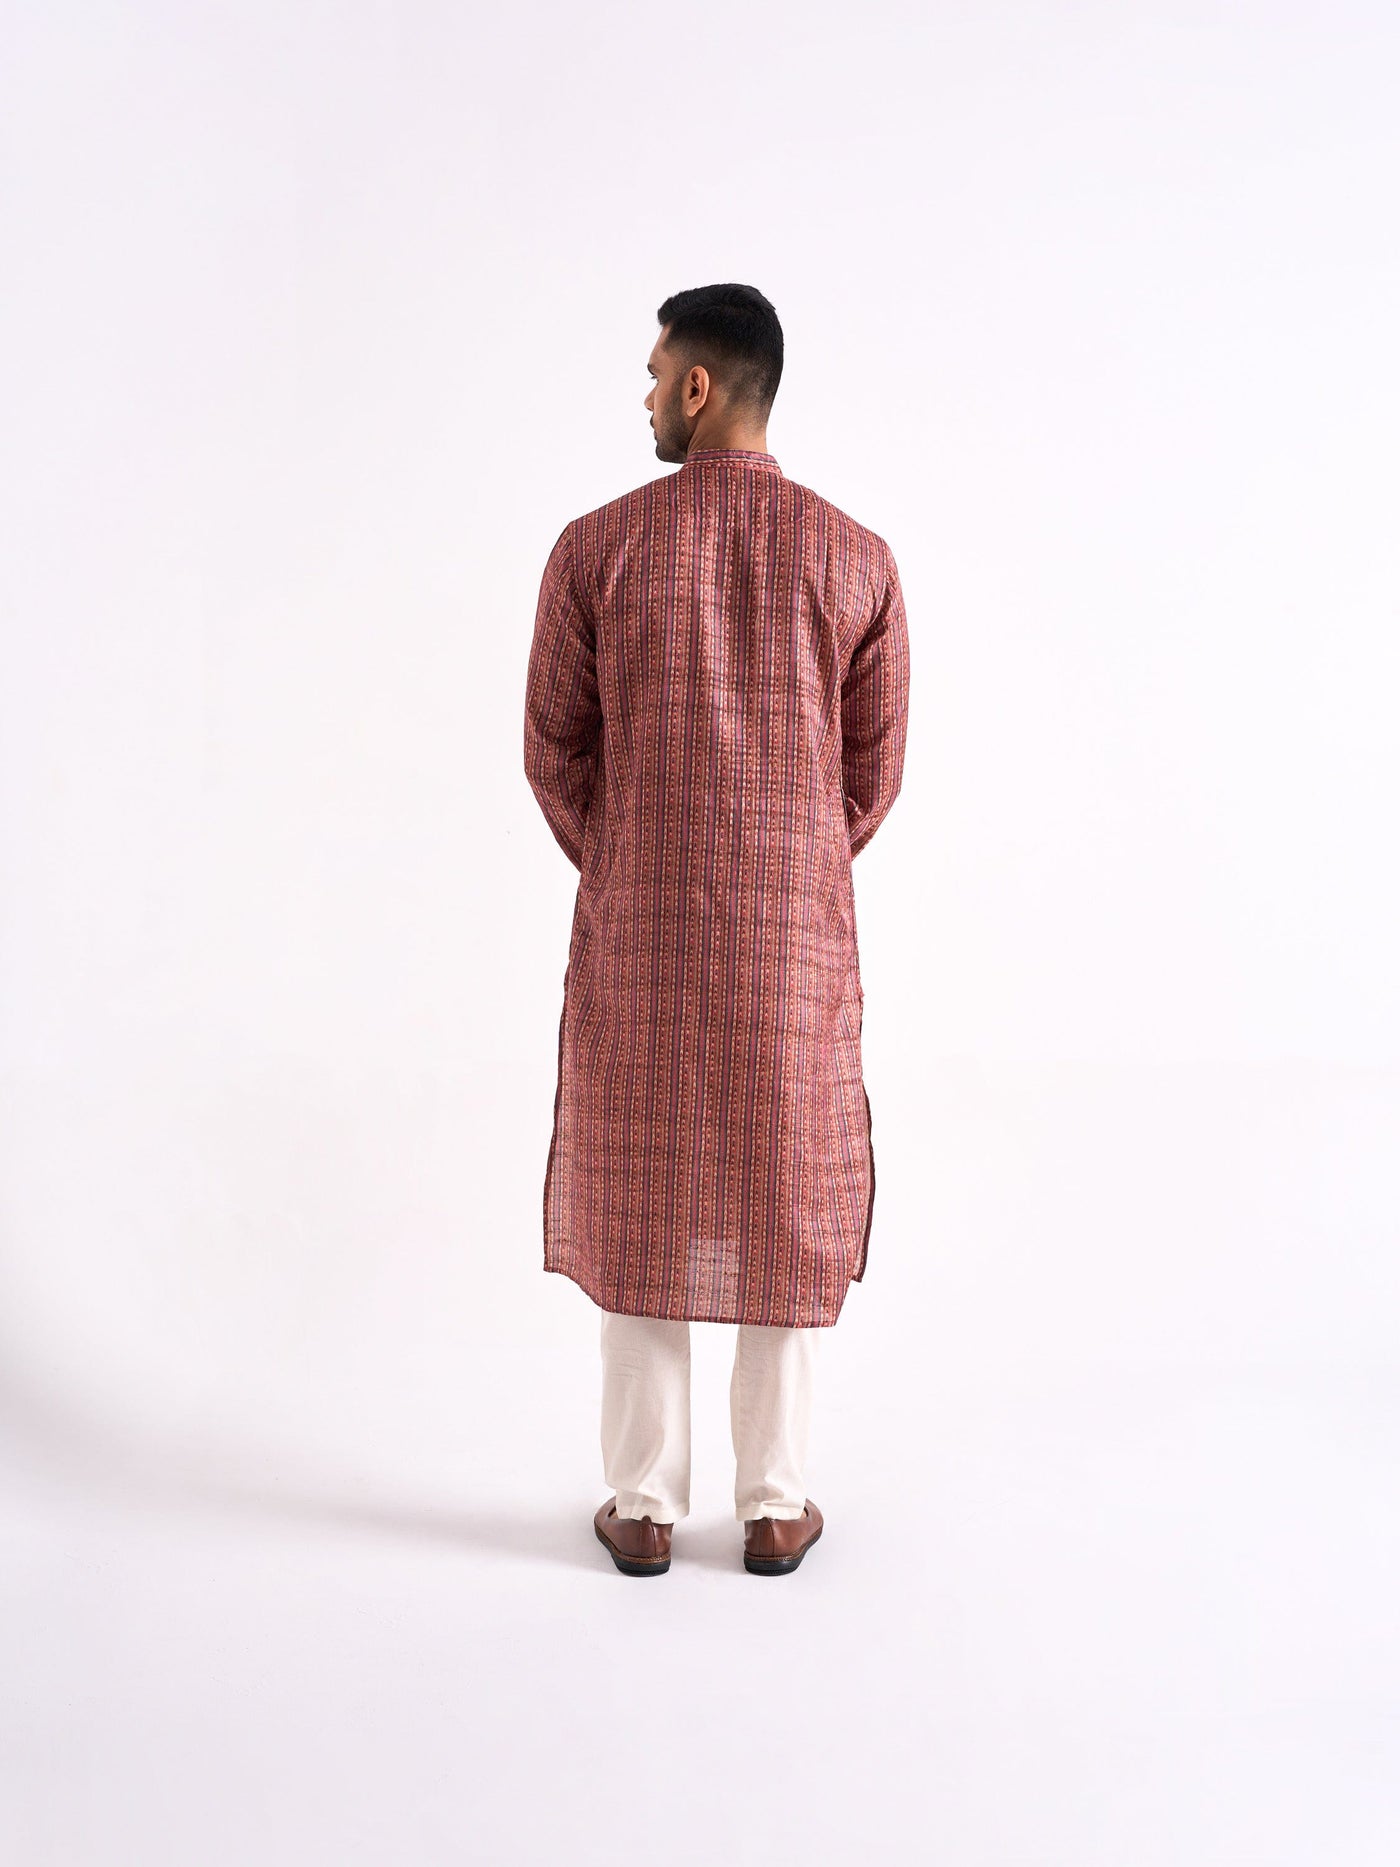 Fabric Pandit Men's Yellow & Pink Phulkari Stripes Printed Tussar Silk Comfort Fit Long Kurta